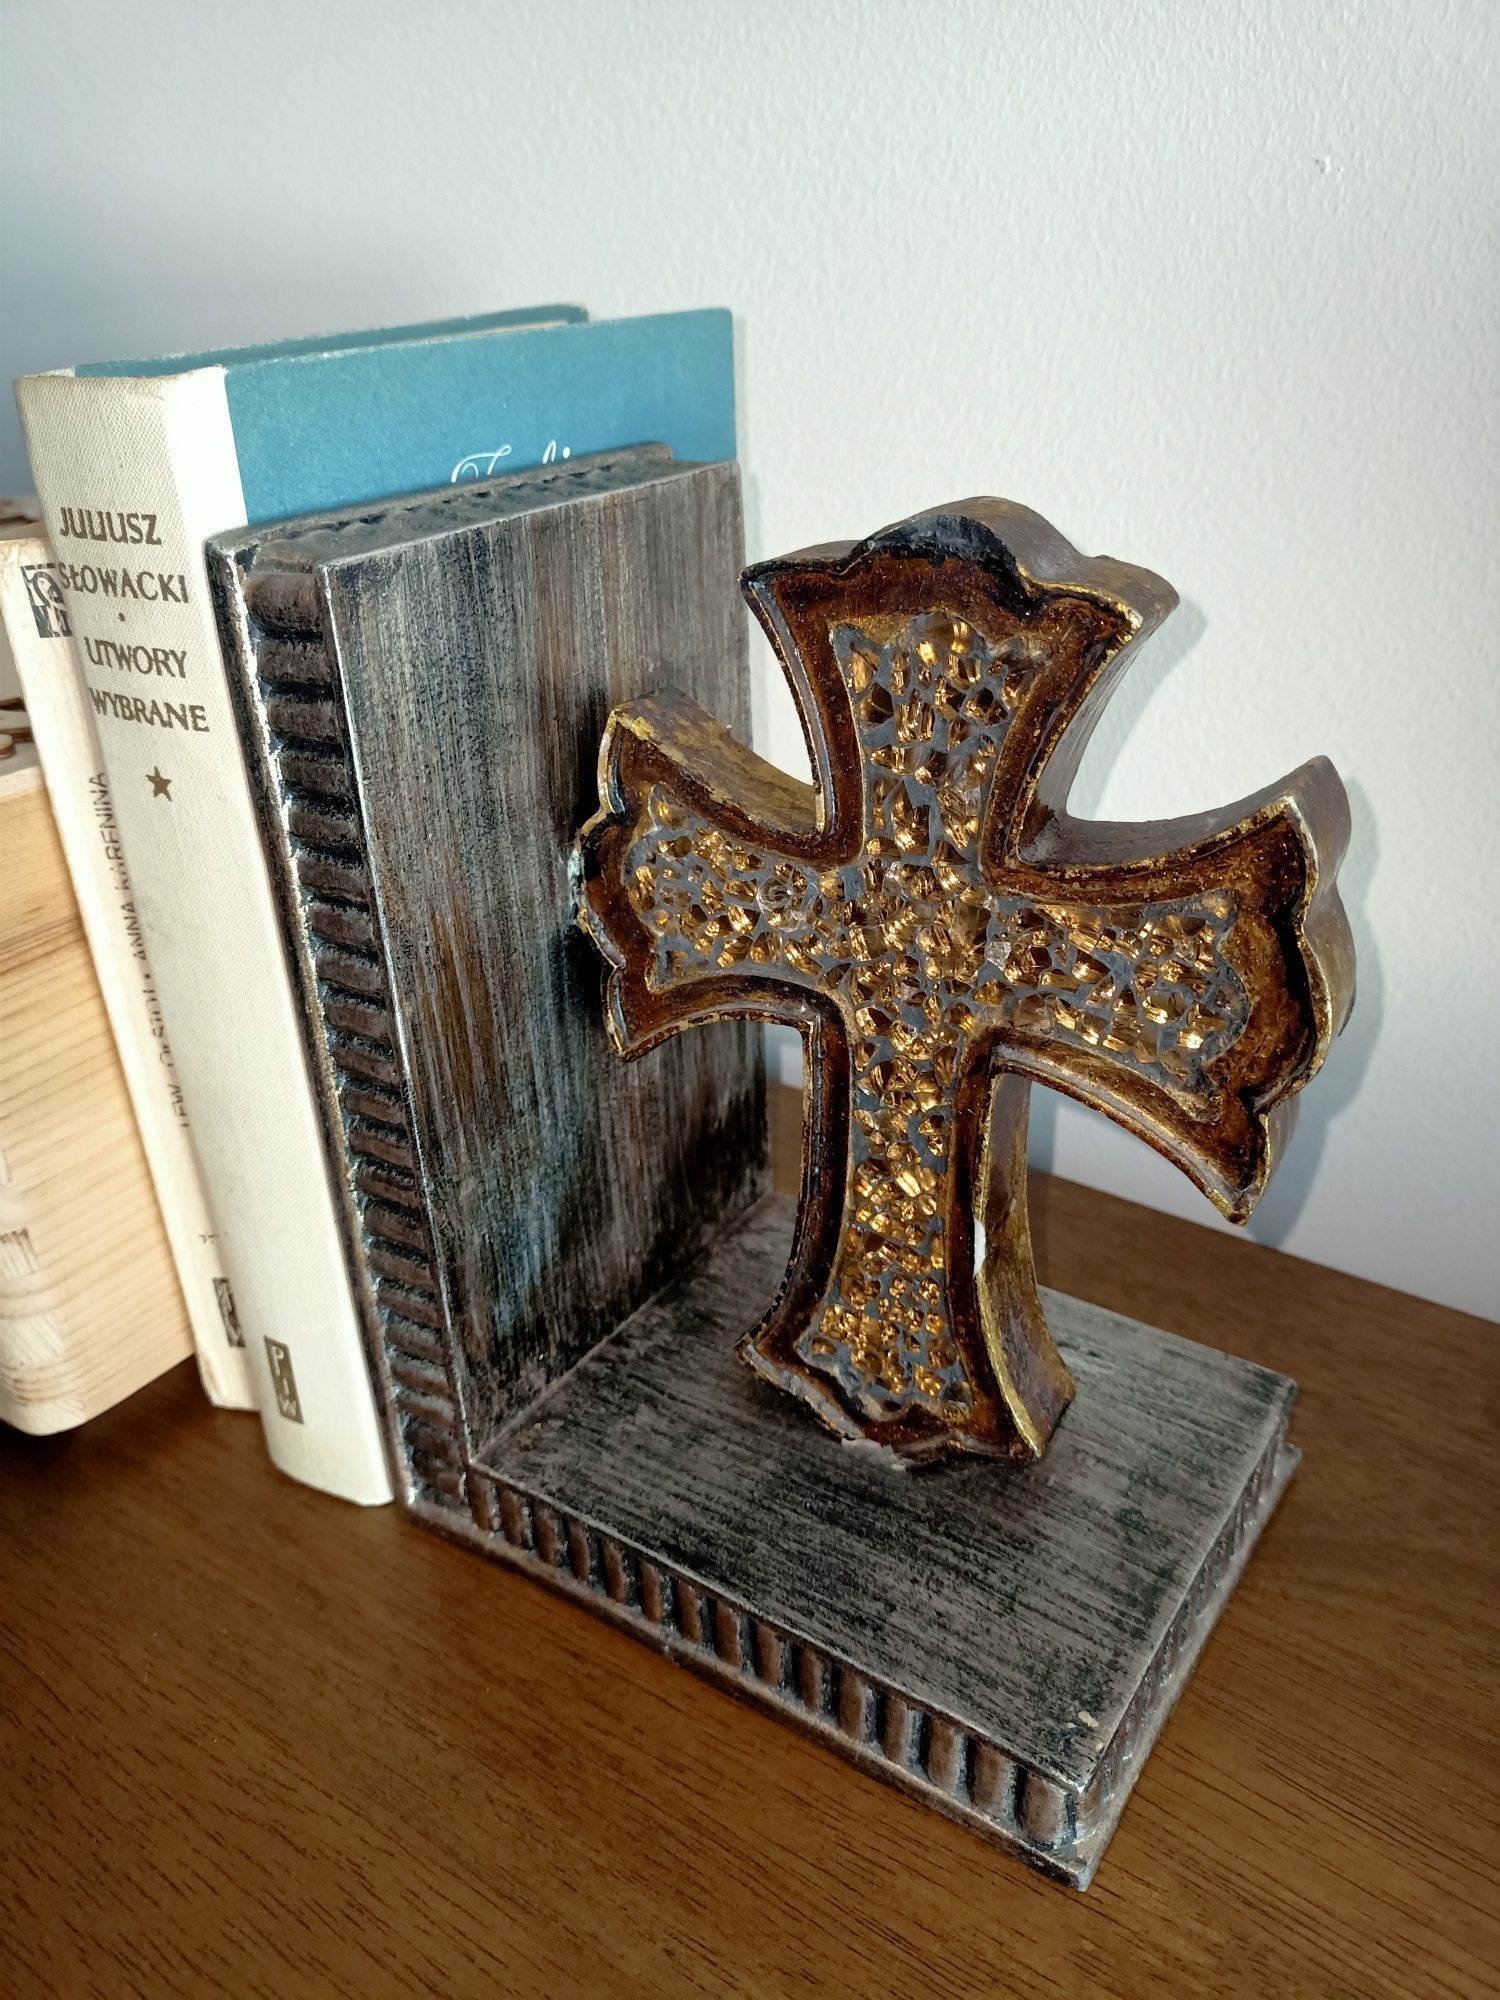 Podpórka pod książki vintage krzyż podstawka, stojak ogranicznik stary